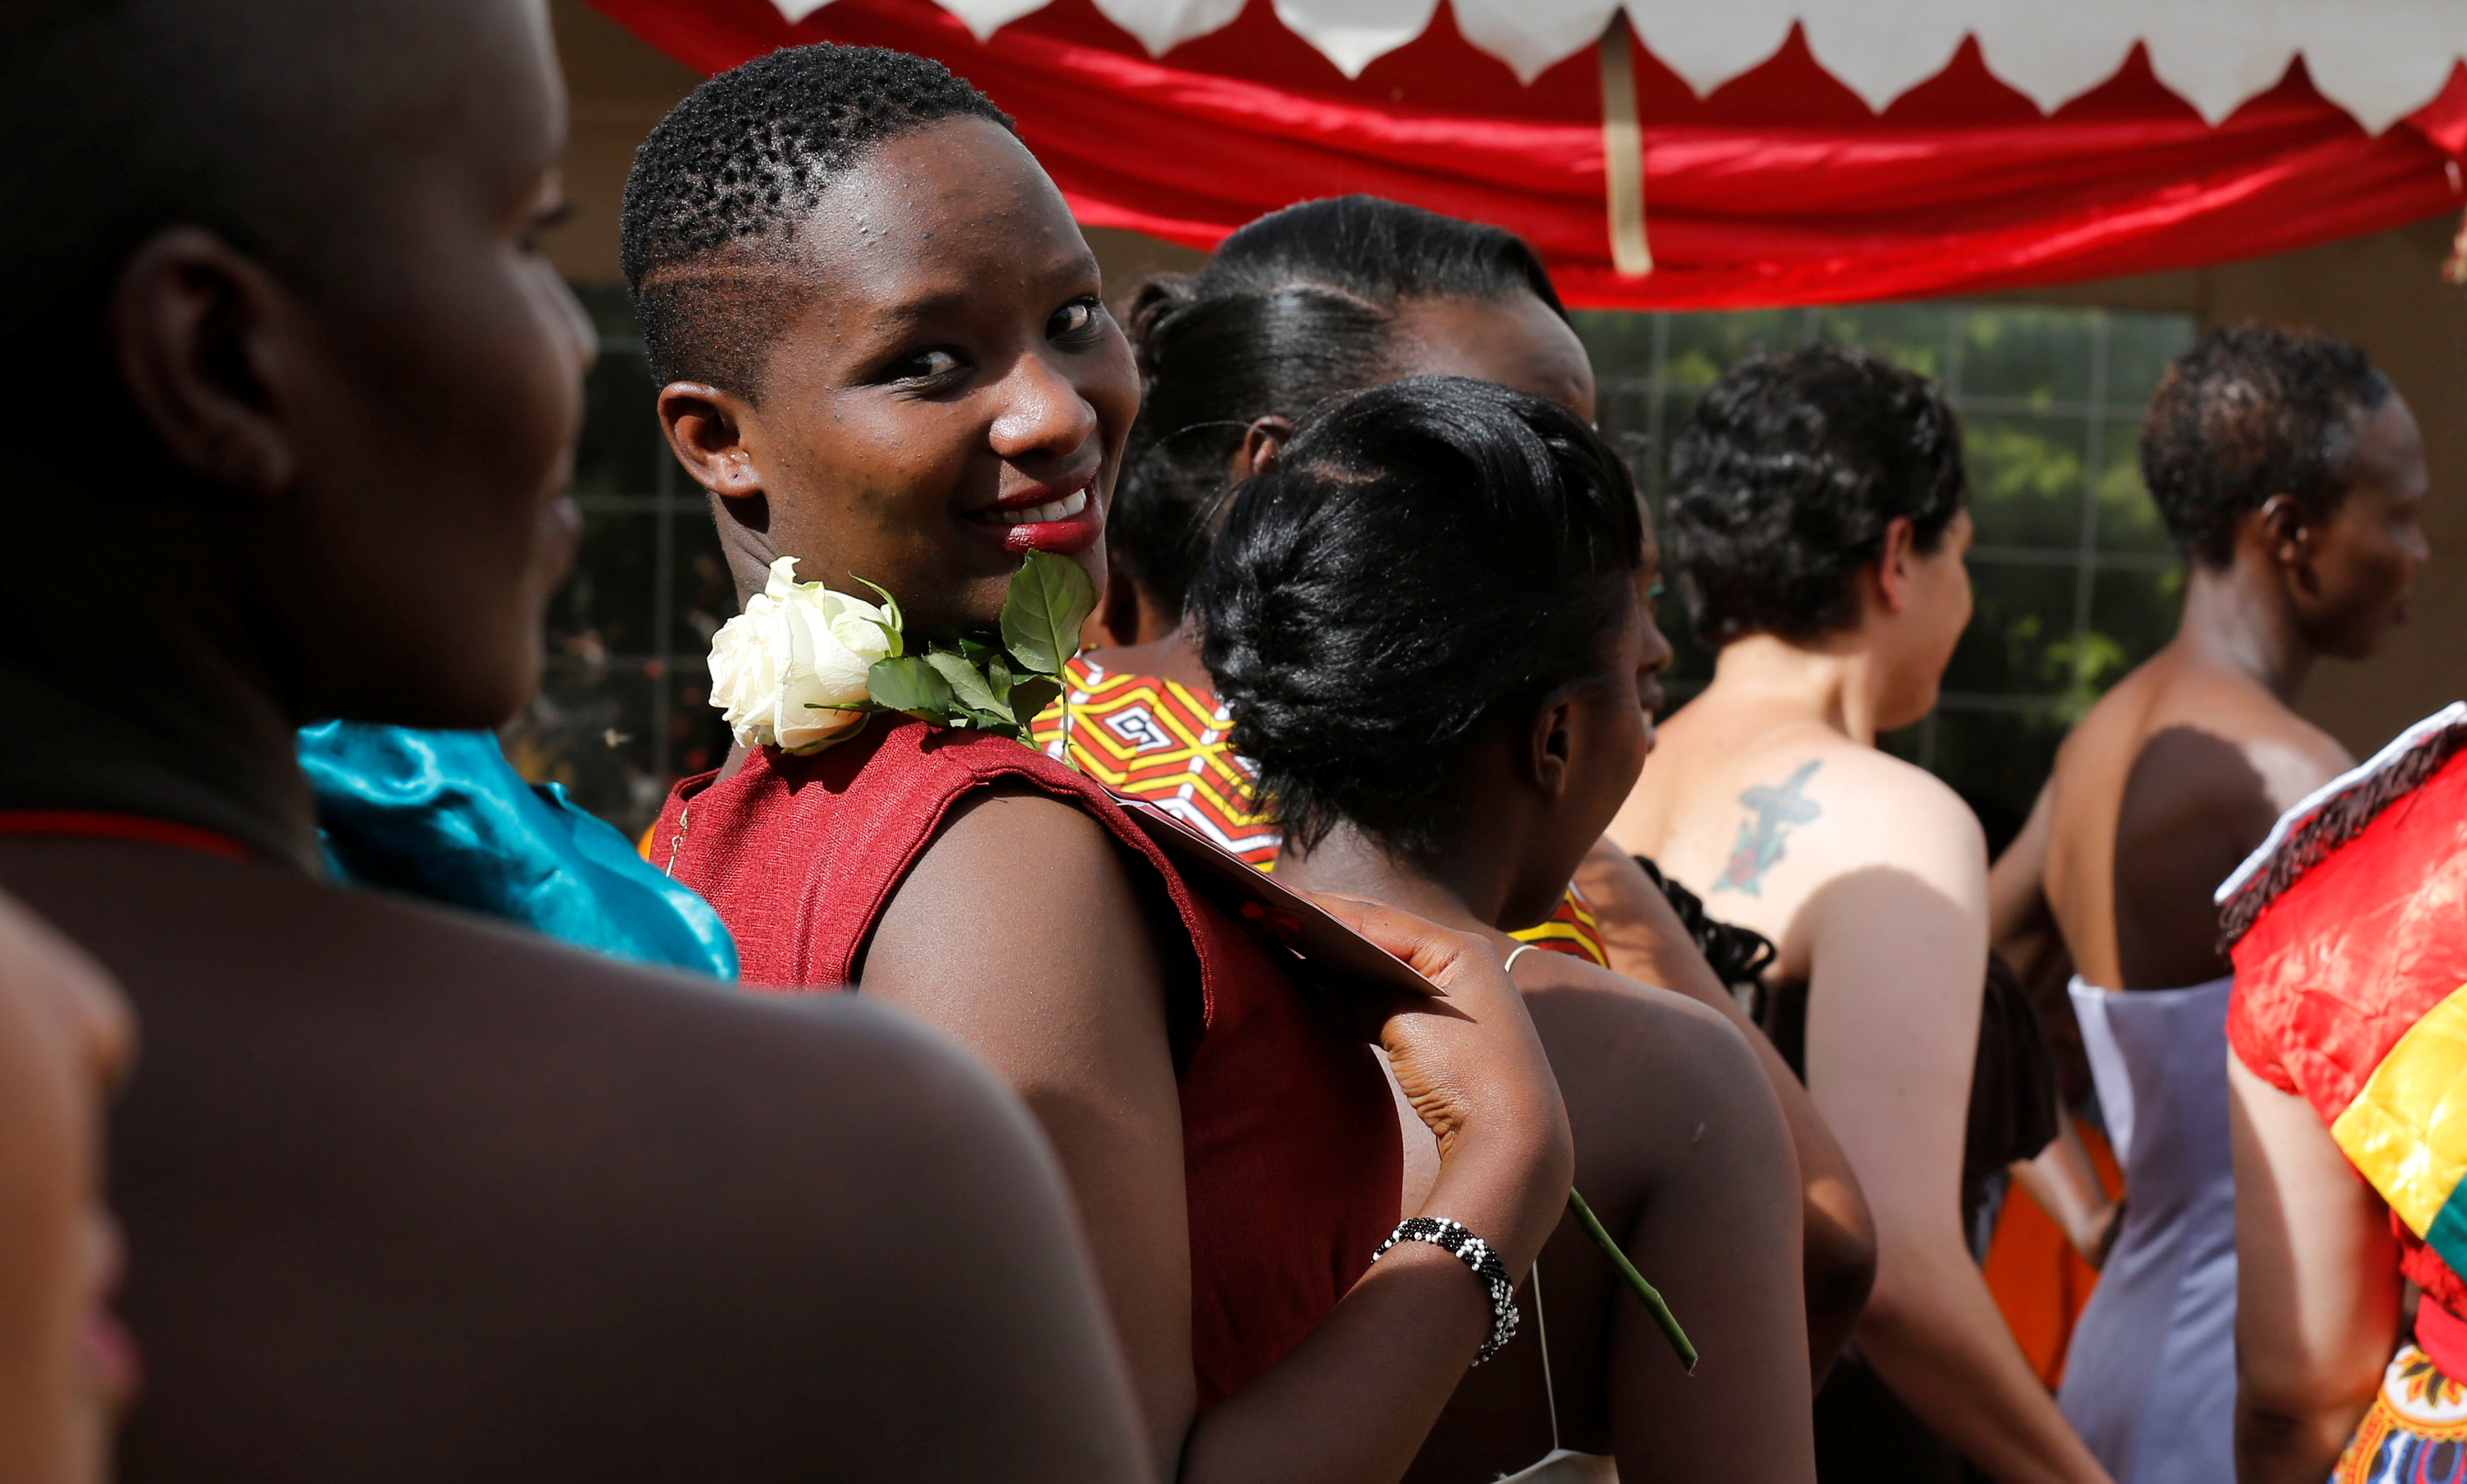 سجينات فى كينيا تشاركن فى حفل عرض أزياء بمناسبة عيد الحب